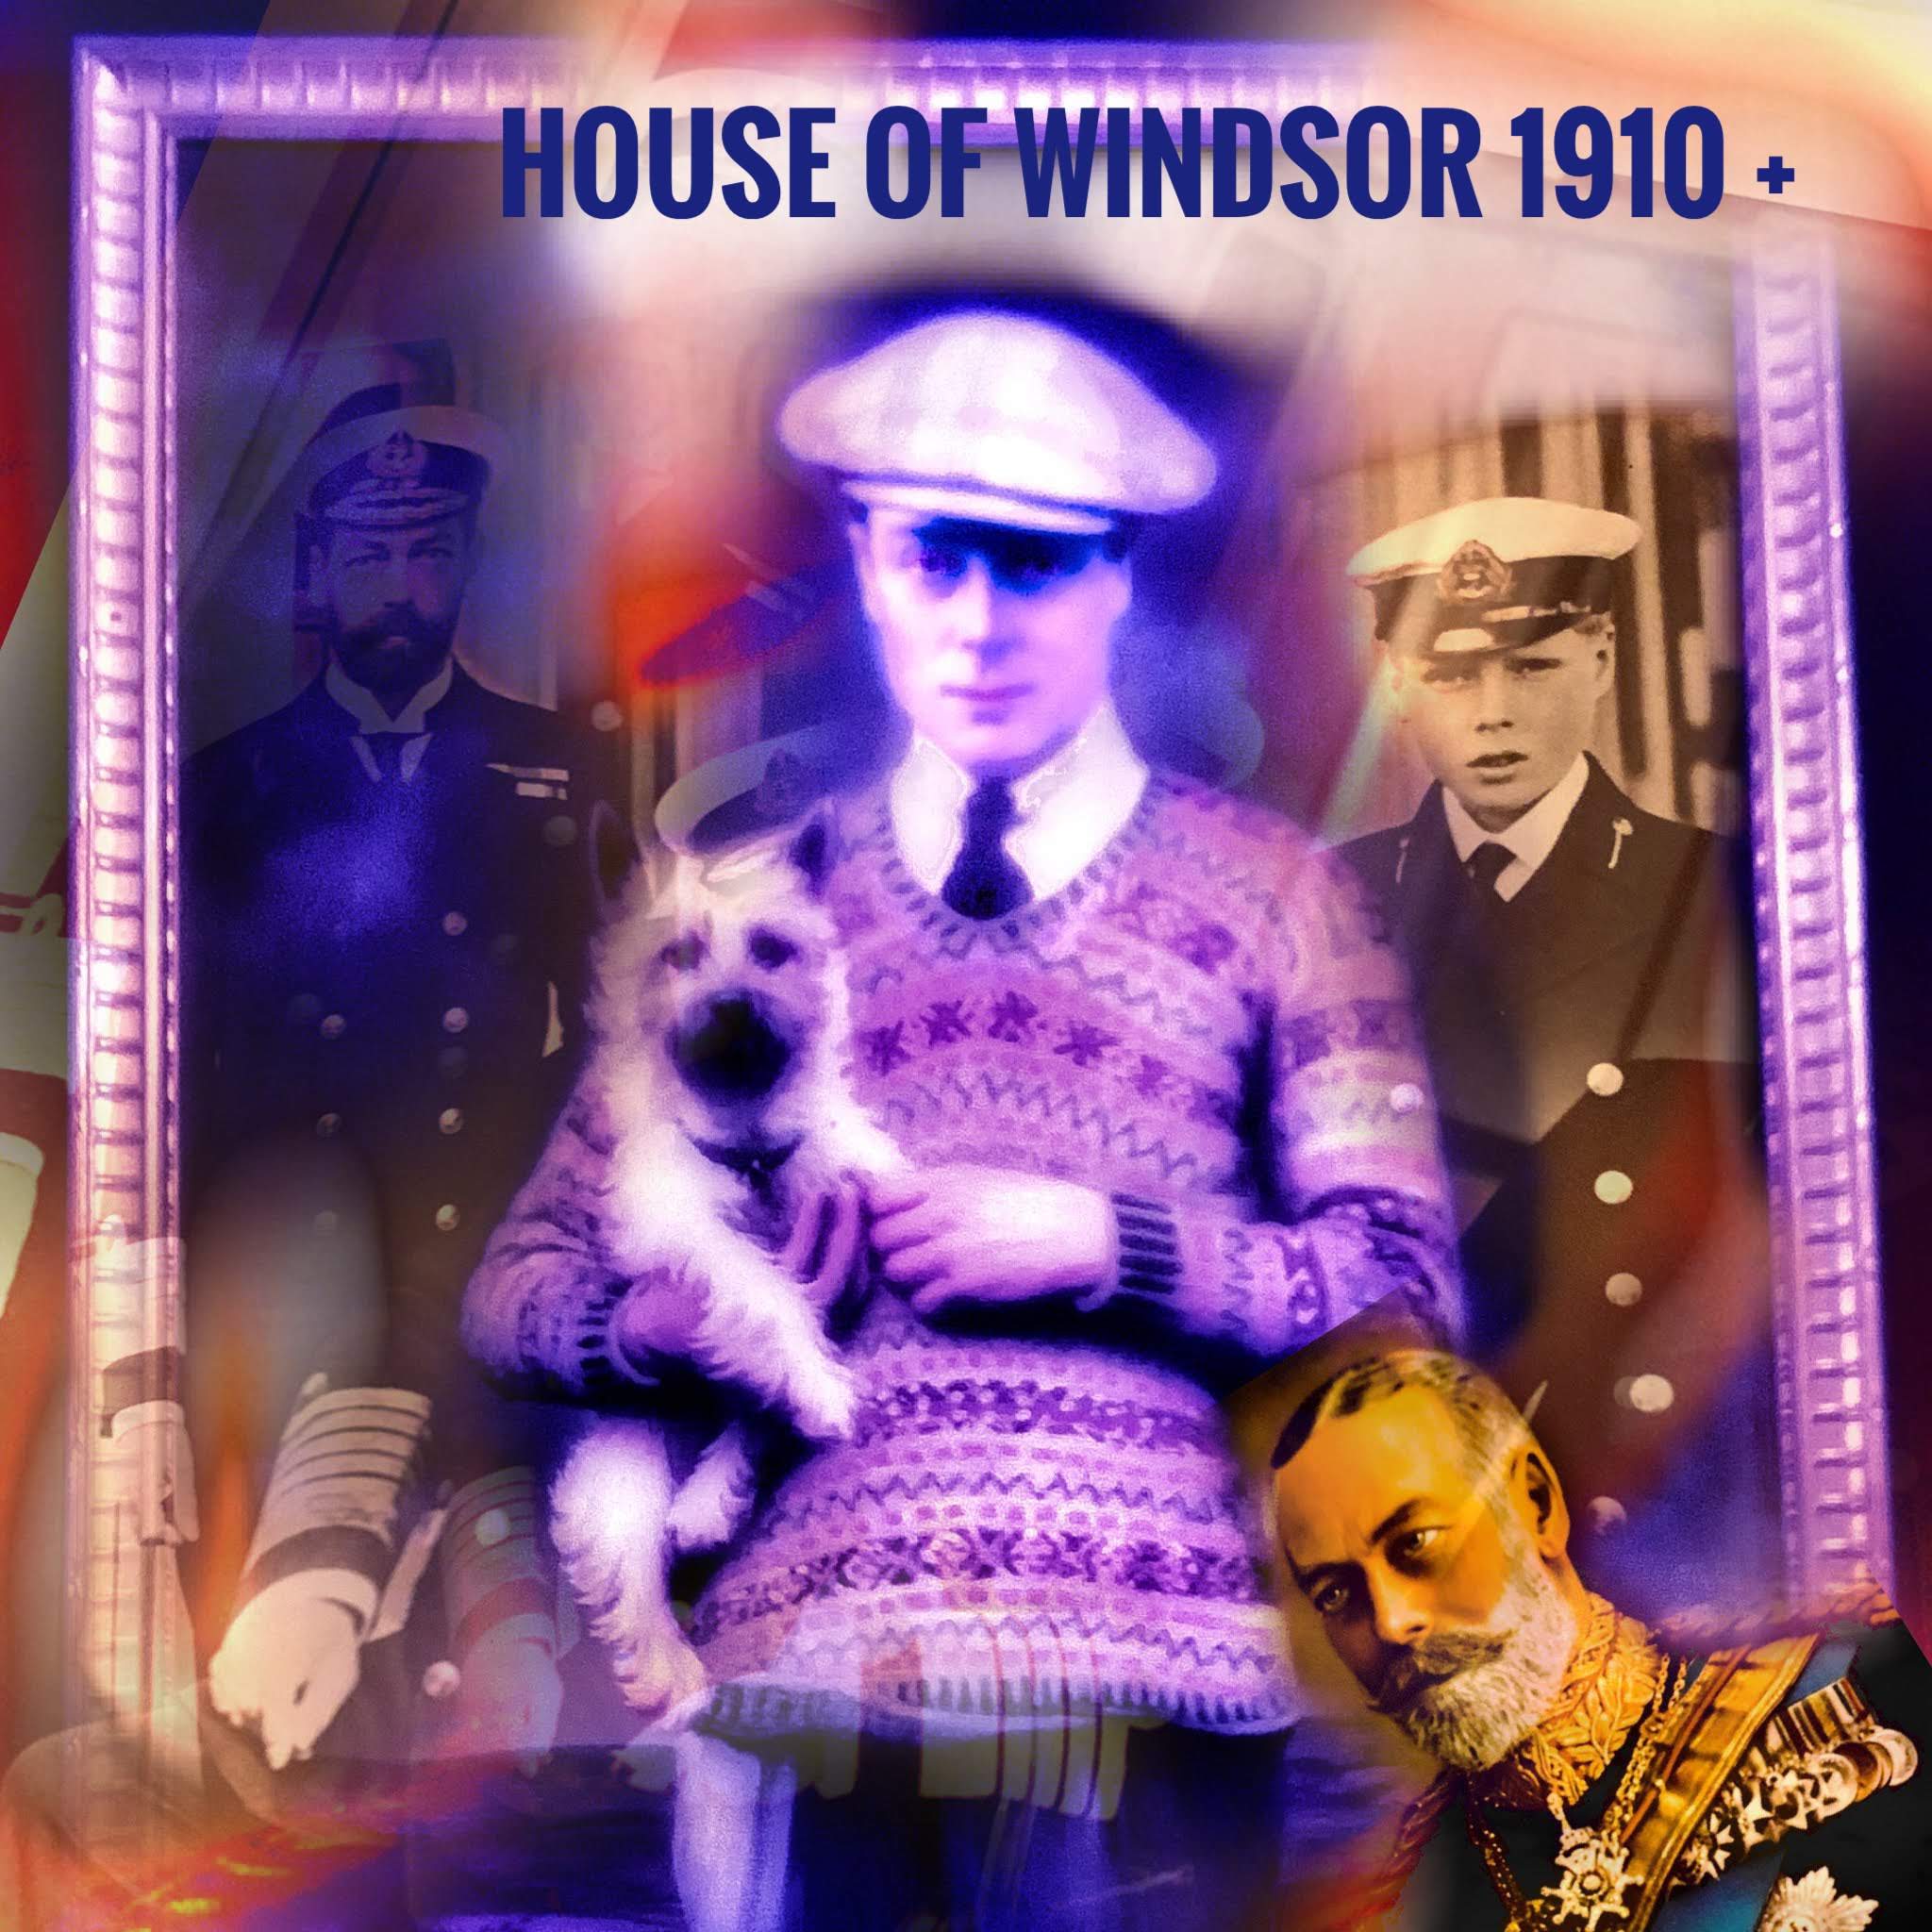 House of Windsor 1910 onwards